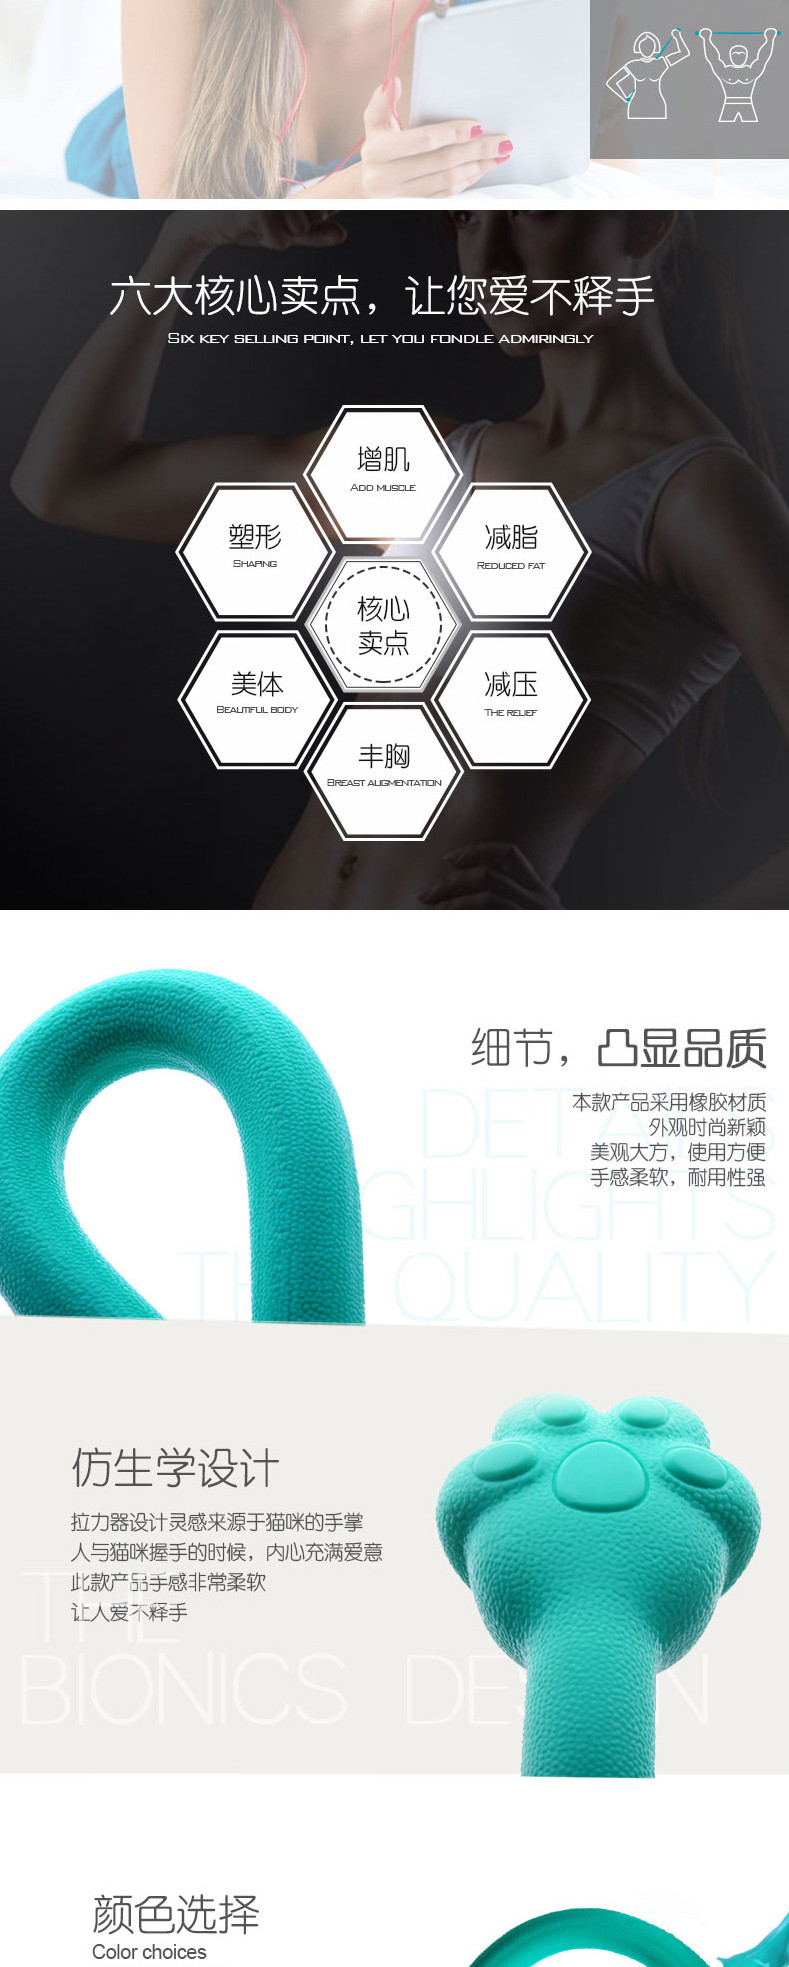 台湾Artiart创意猫爪造型拉力器 女士健身拉力器 粉色 CUTE071